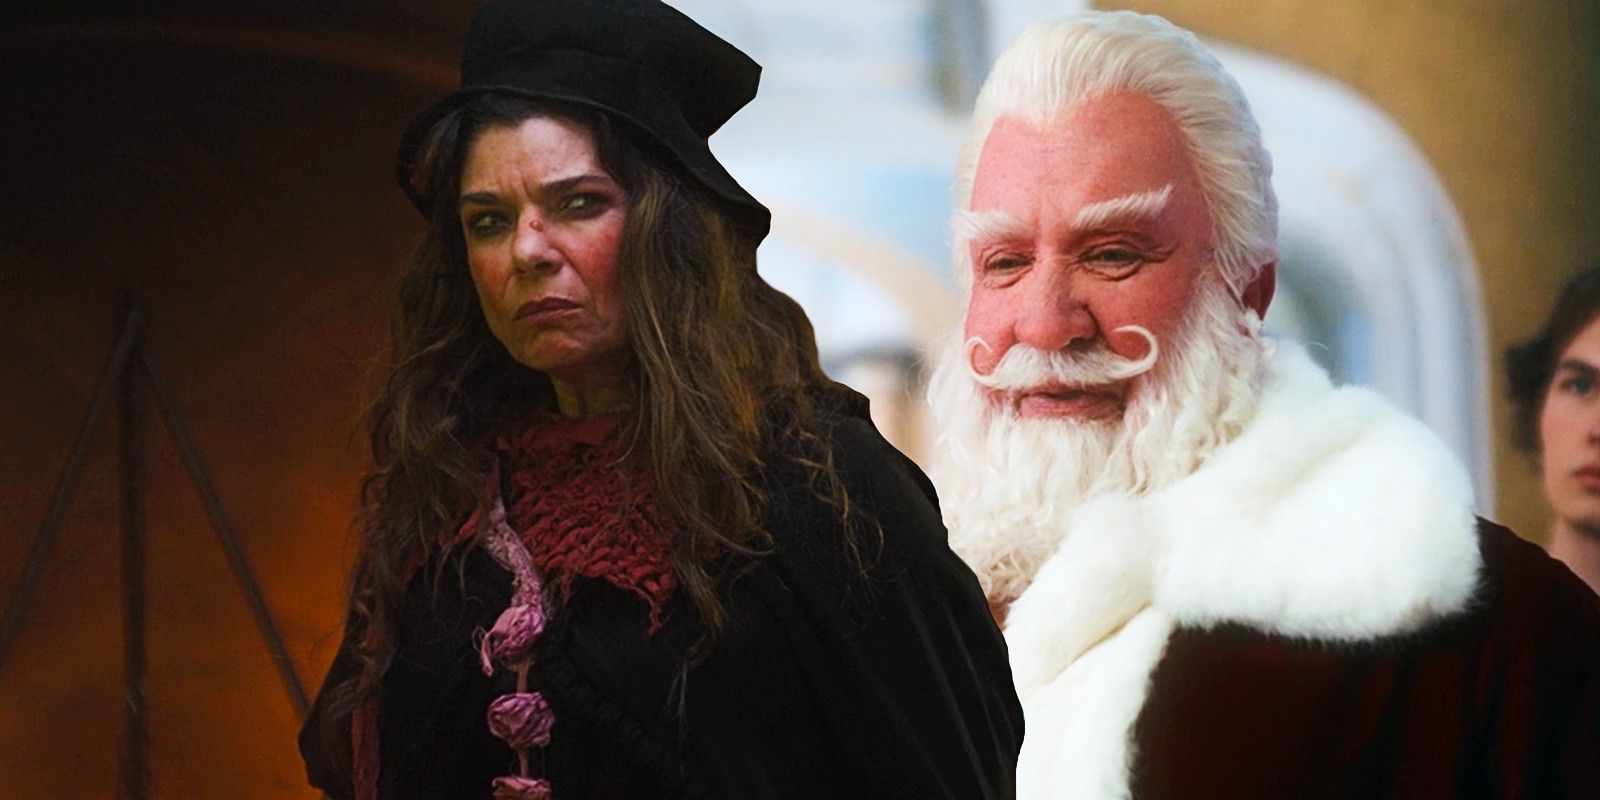 Laura San Giacomo als kerstheks en Tim Allen als kerstman in The Santa Clauses